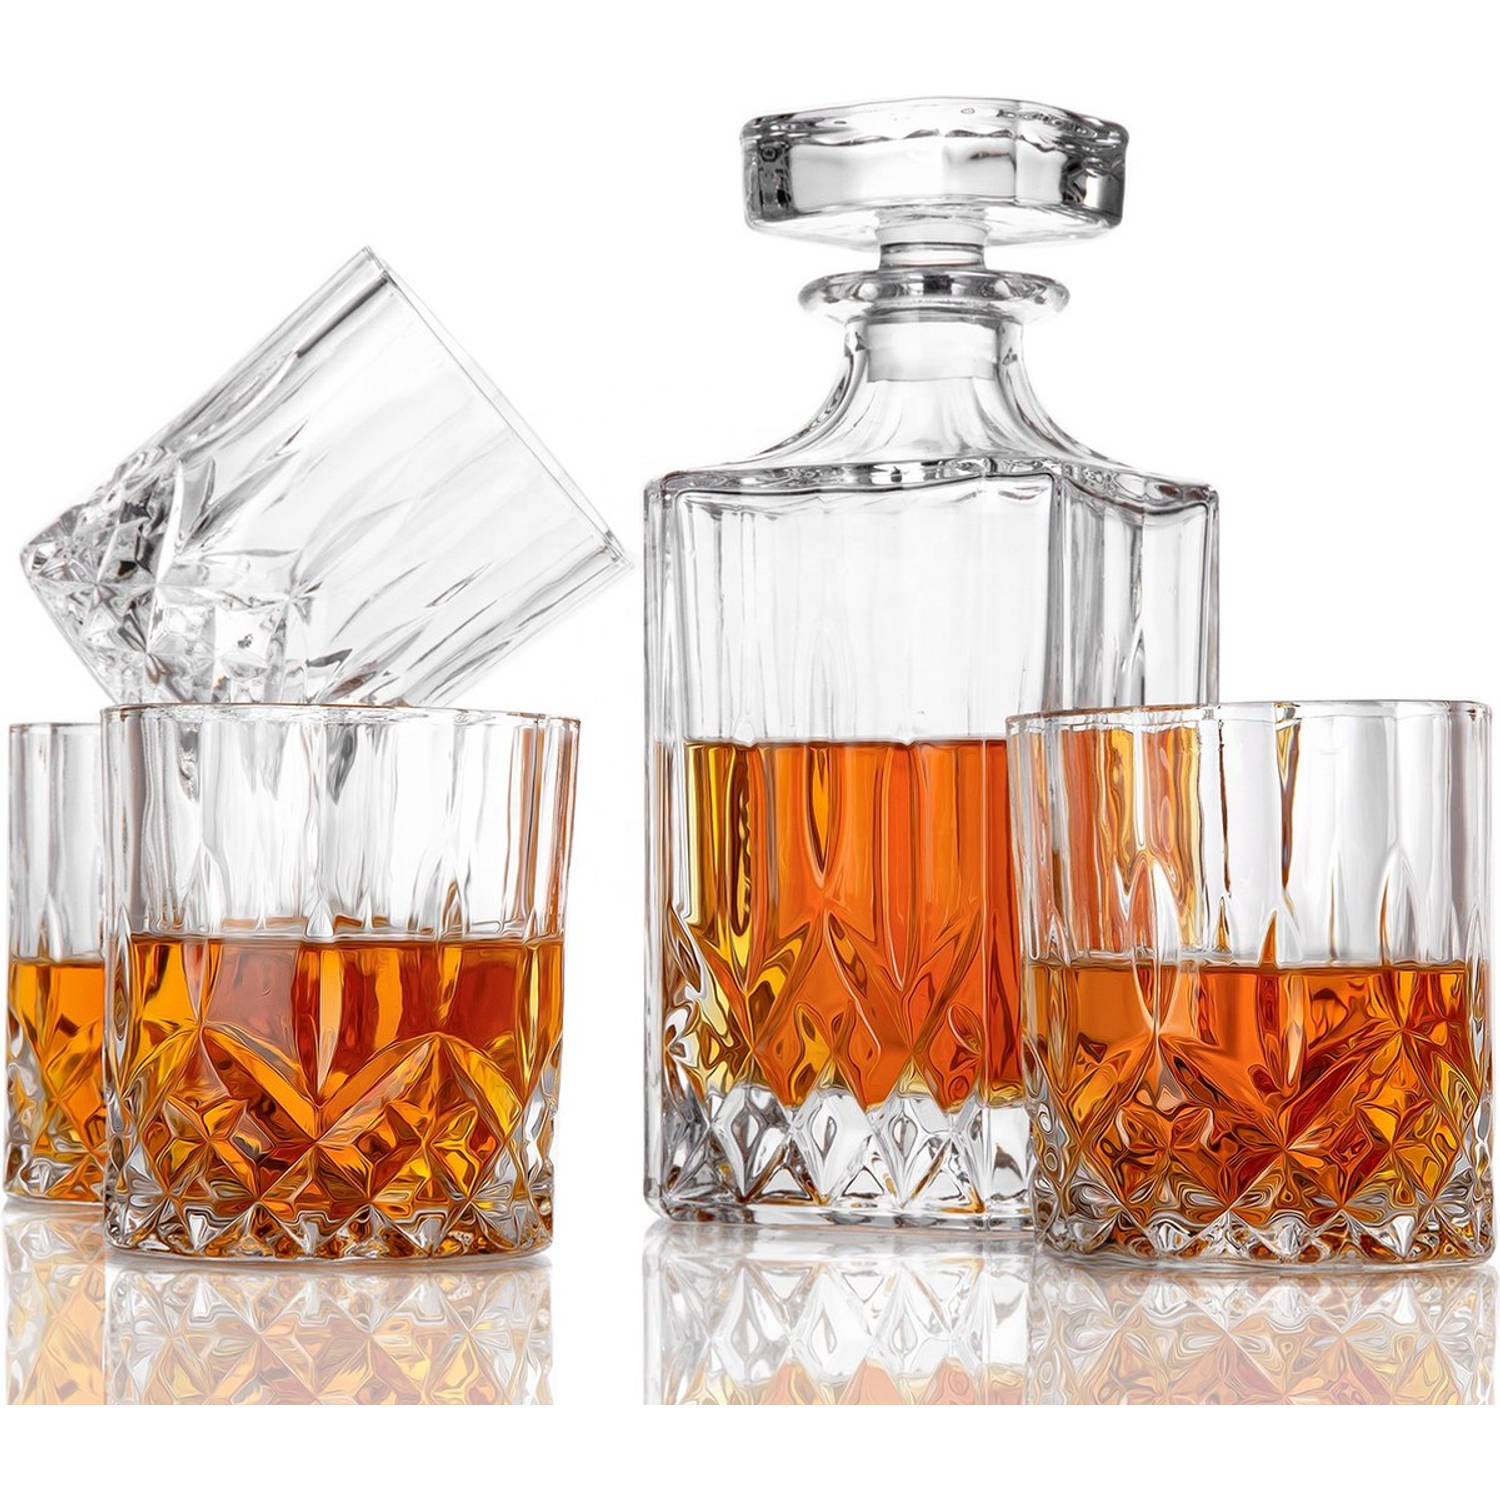 Niceey Whiskeyset Set Van 5 Glas